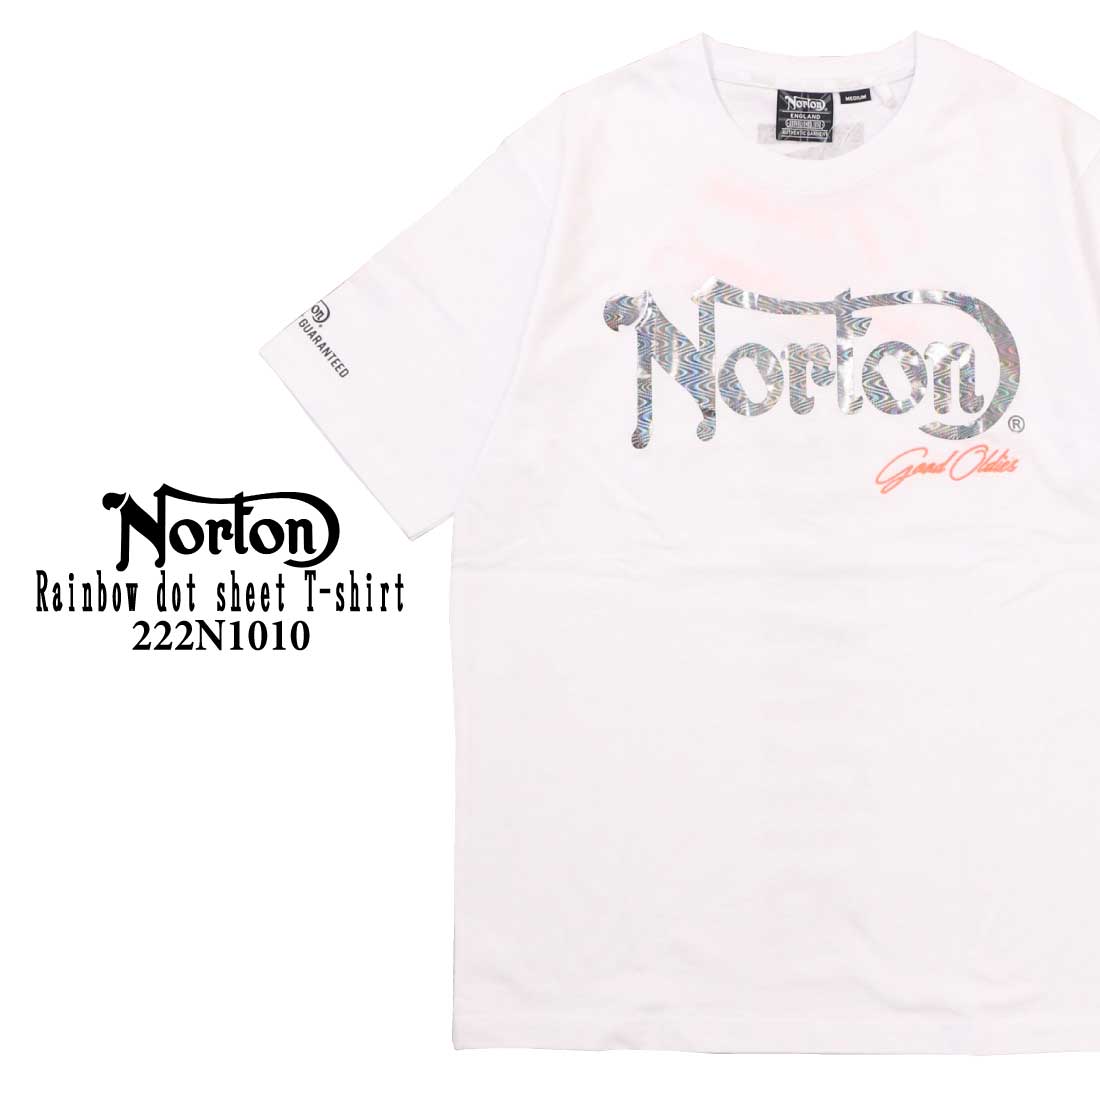 Norton ノートン 服  半袖 Tシャツ 222N1010 レインボードットシート Tシャツ メ...